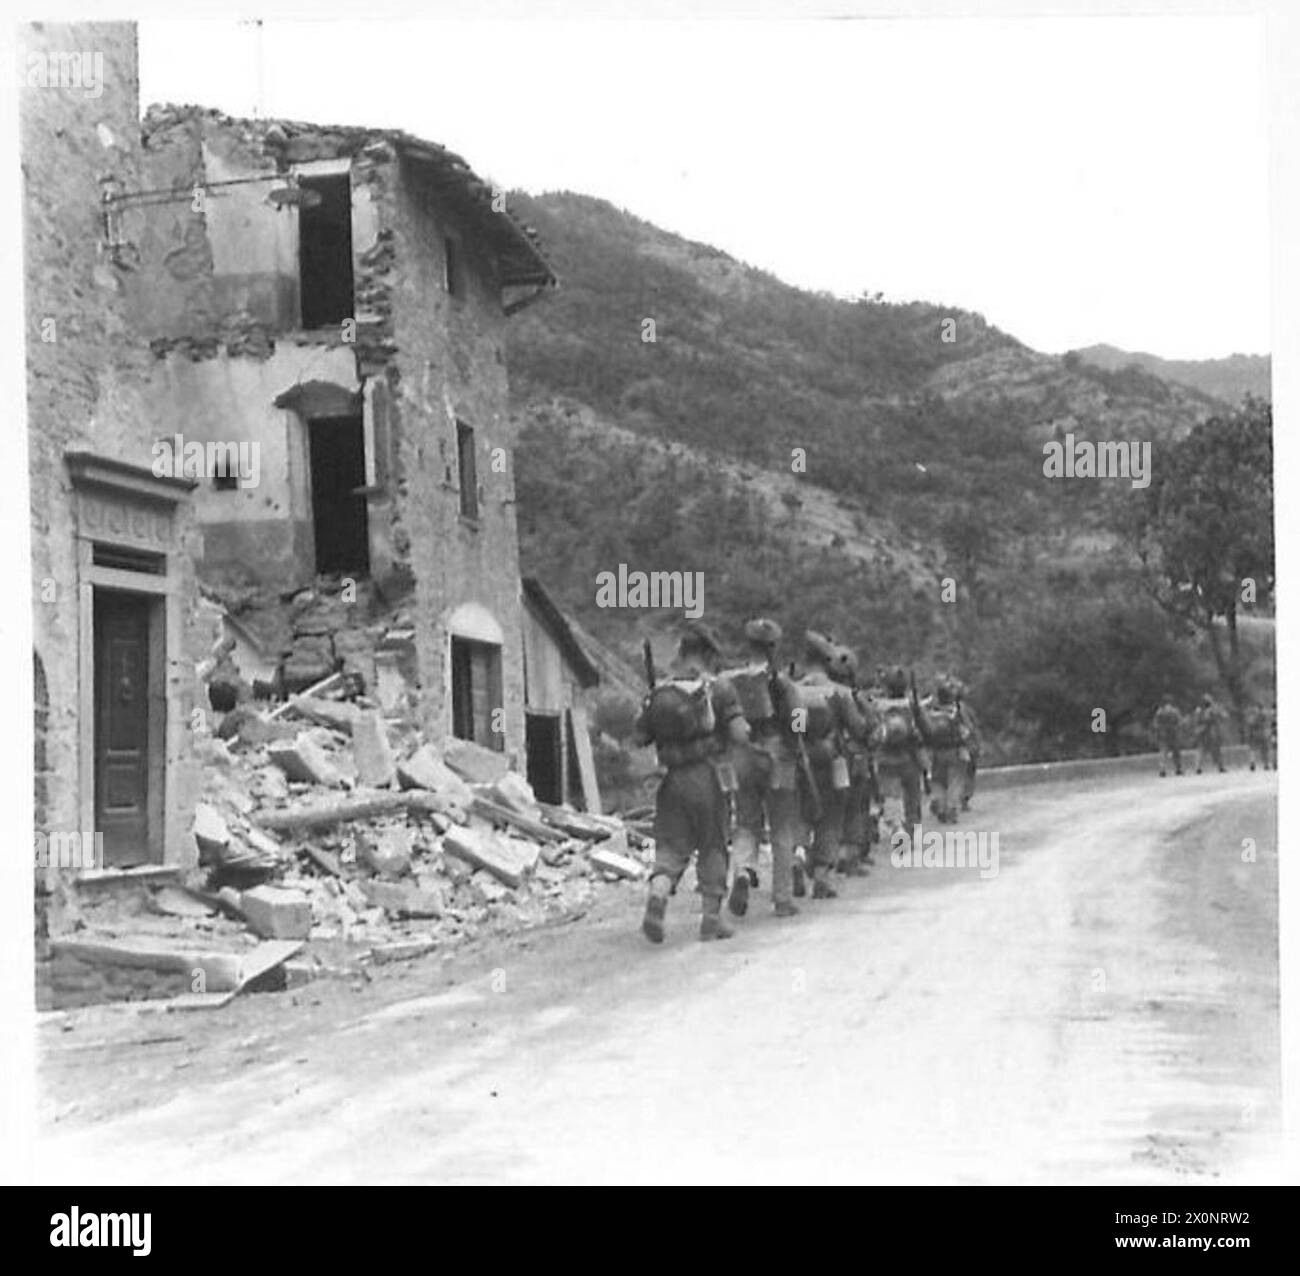 OTTAVO ESERCITO VARIE - Una sezione di fanteria britannica si sposta in avanti attraverso il villaggio di San Godenzo, passando l'ultima casa del villaggio malconcio. Negativo fotografico, British Army Foto Stock